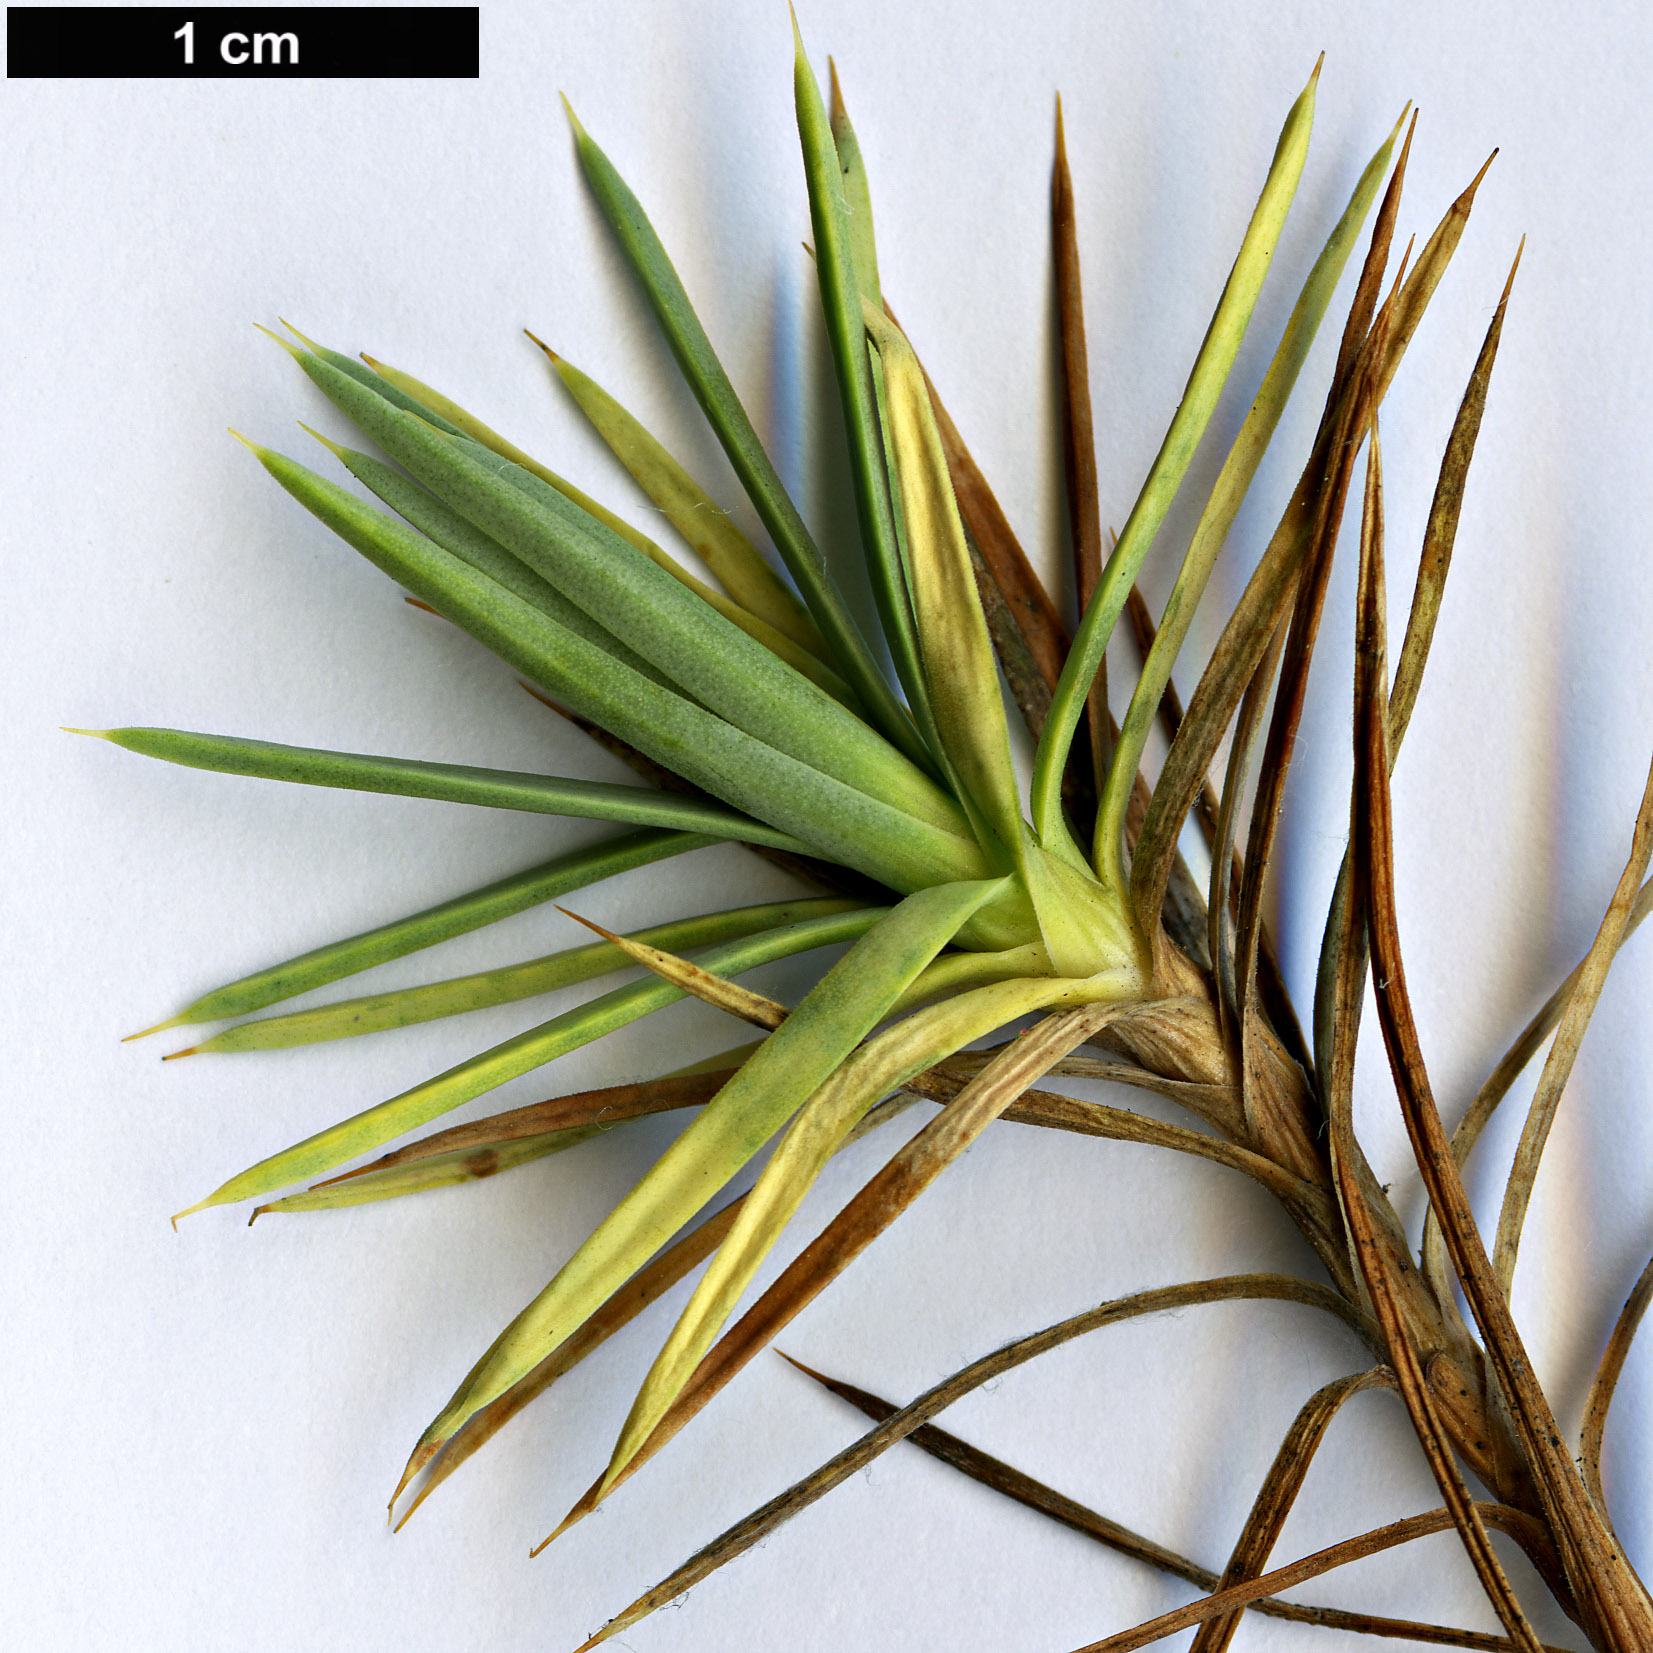 High resolution image: Family: Plumbaginaceae - Genus: Acantholimon - Taxon: ulicinum - SpeciesSub: var. creticum